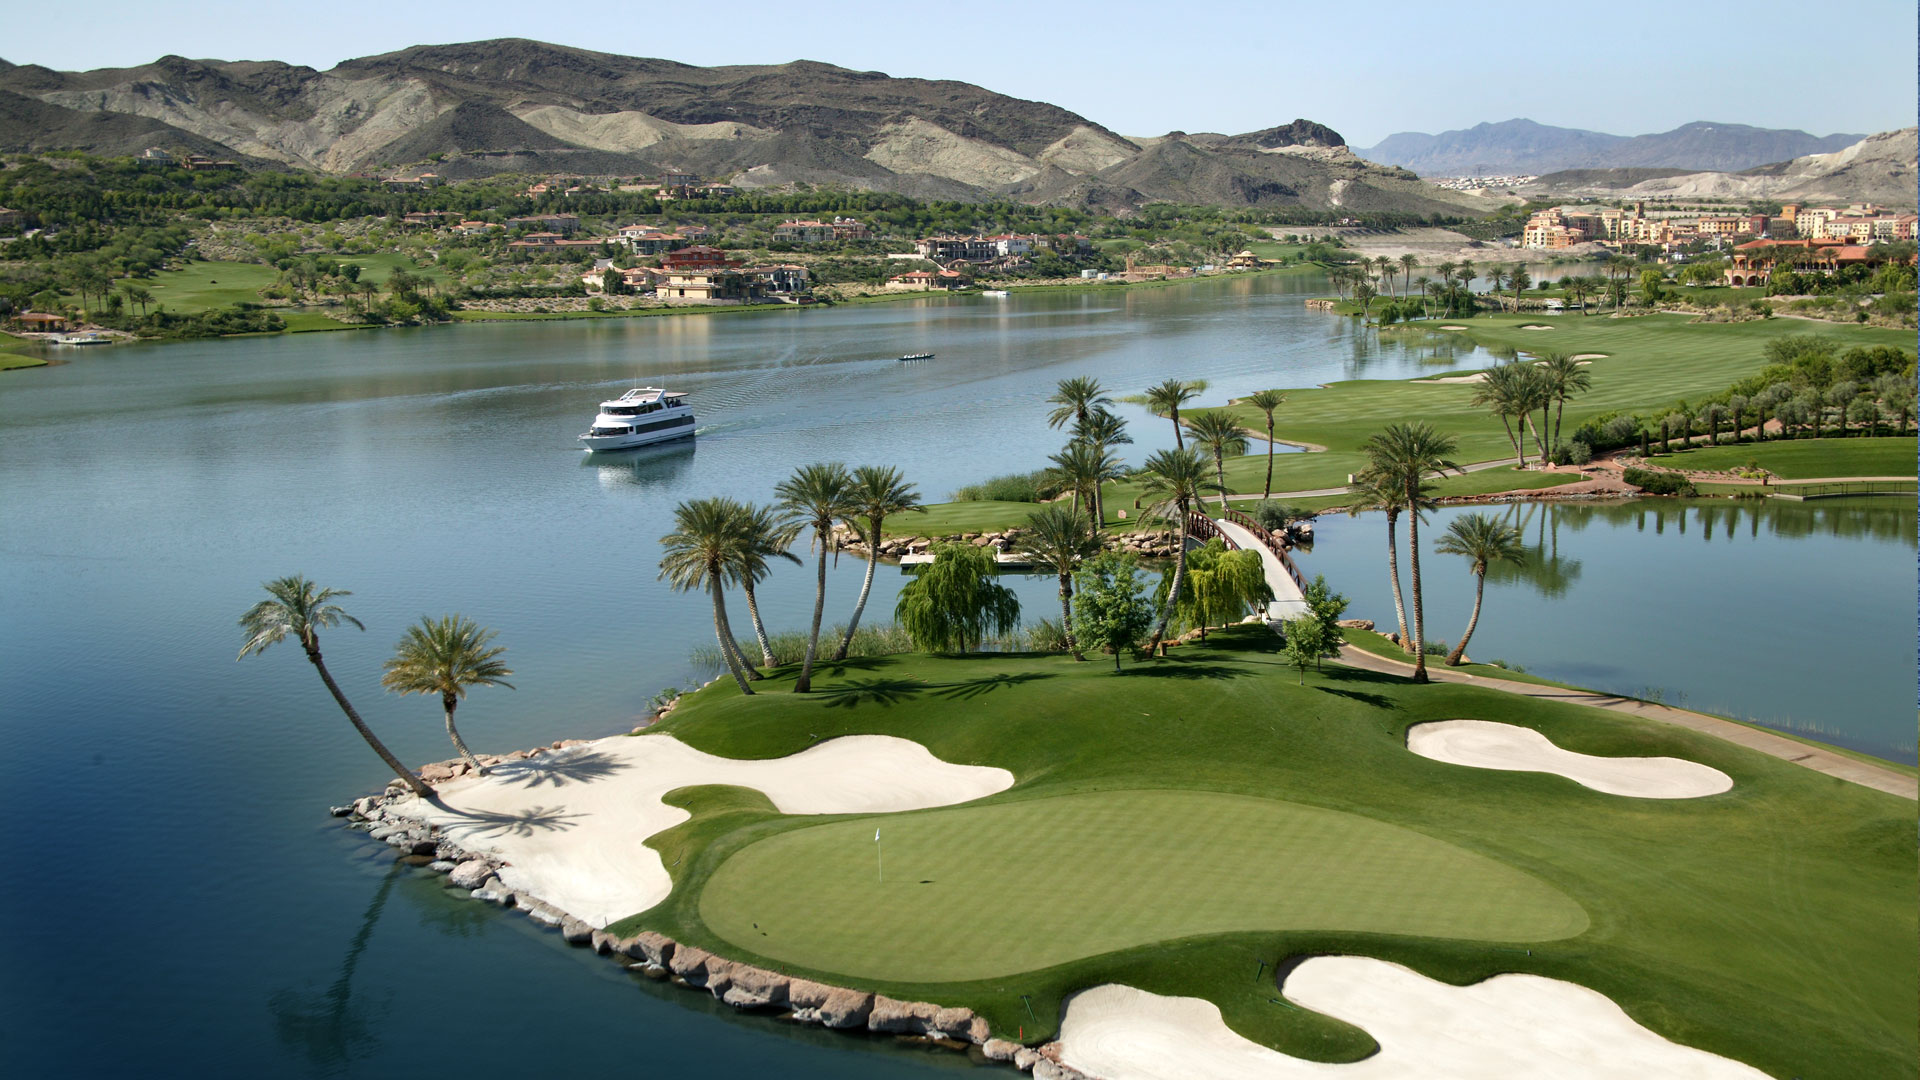 Westin Lake Las Vegas Resort & Spa 3 night, 3 round exclusive package